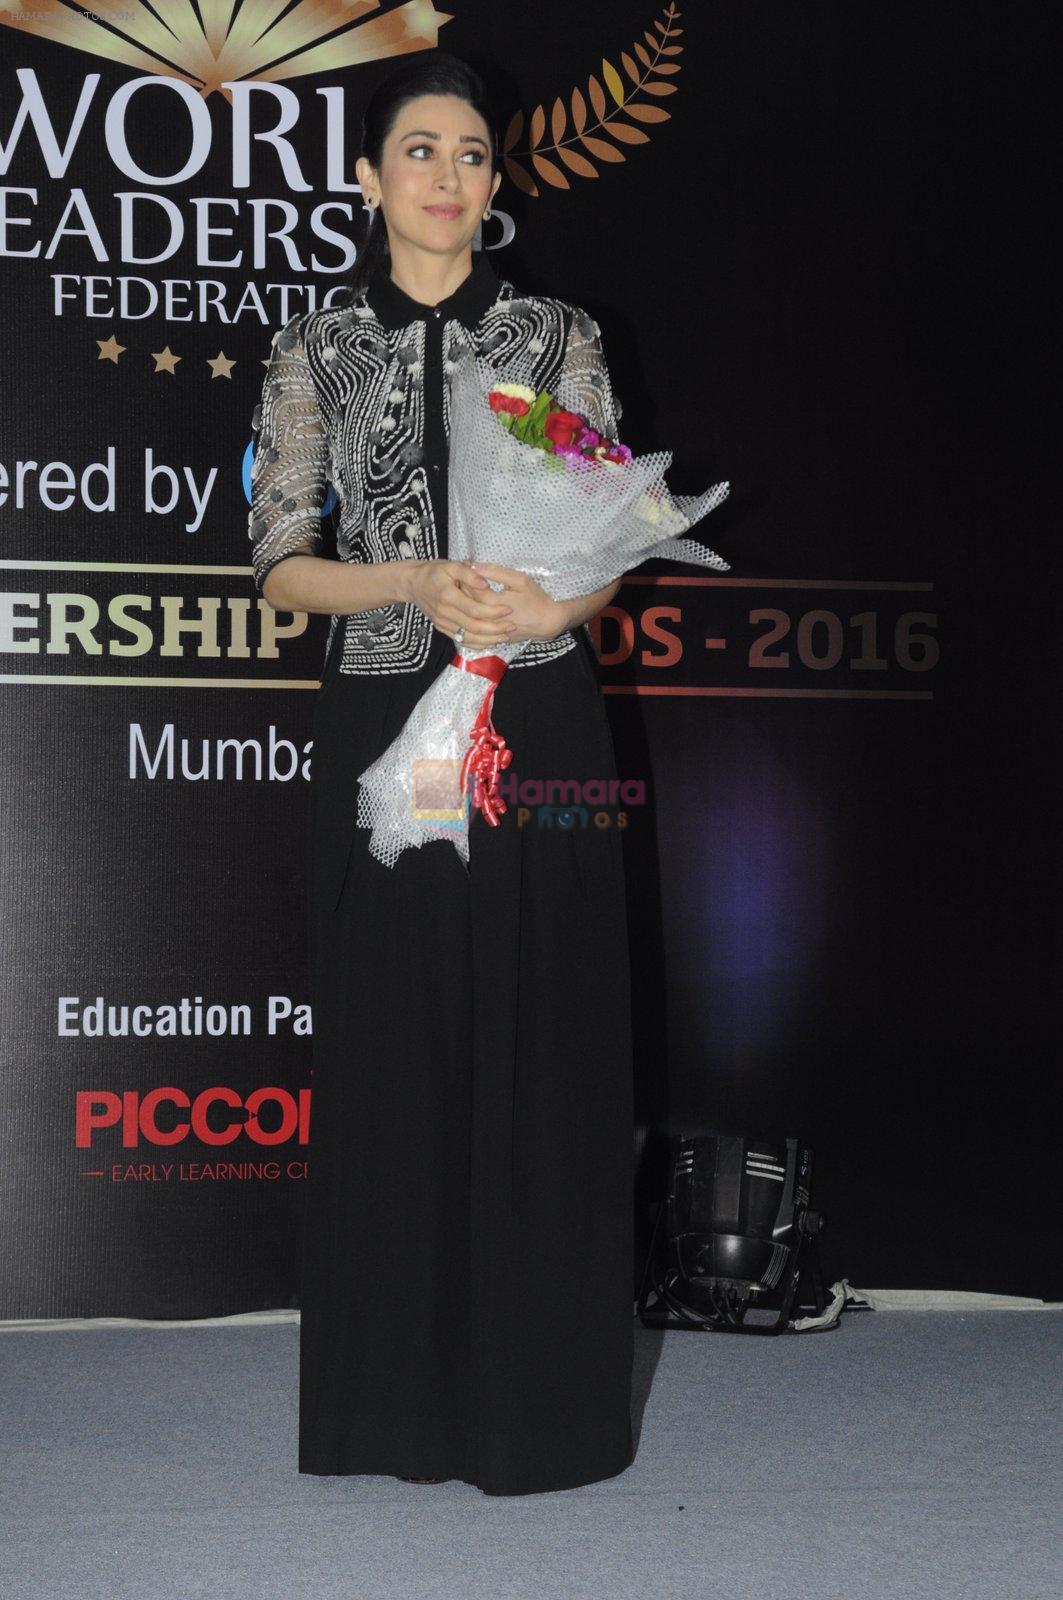 Karisma Kapoor at India Leadership awards on 30th Nov 2016